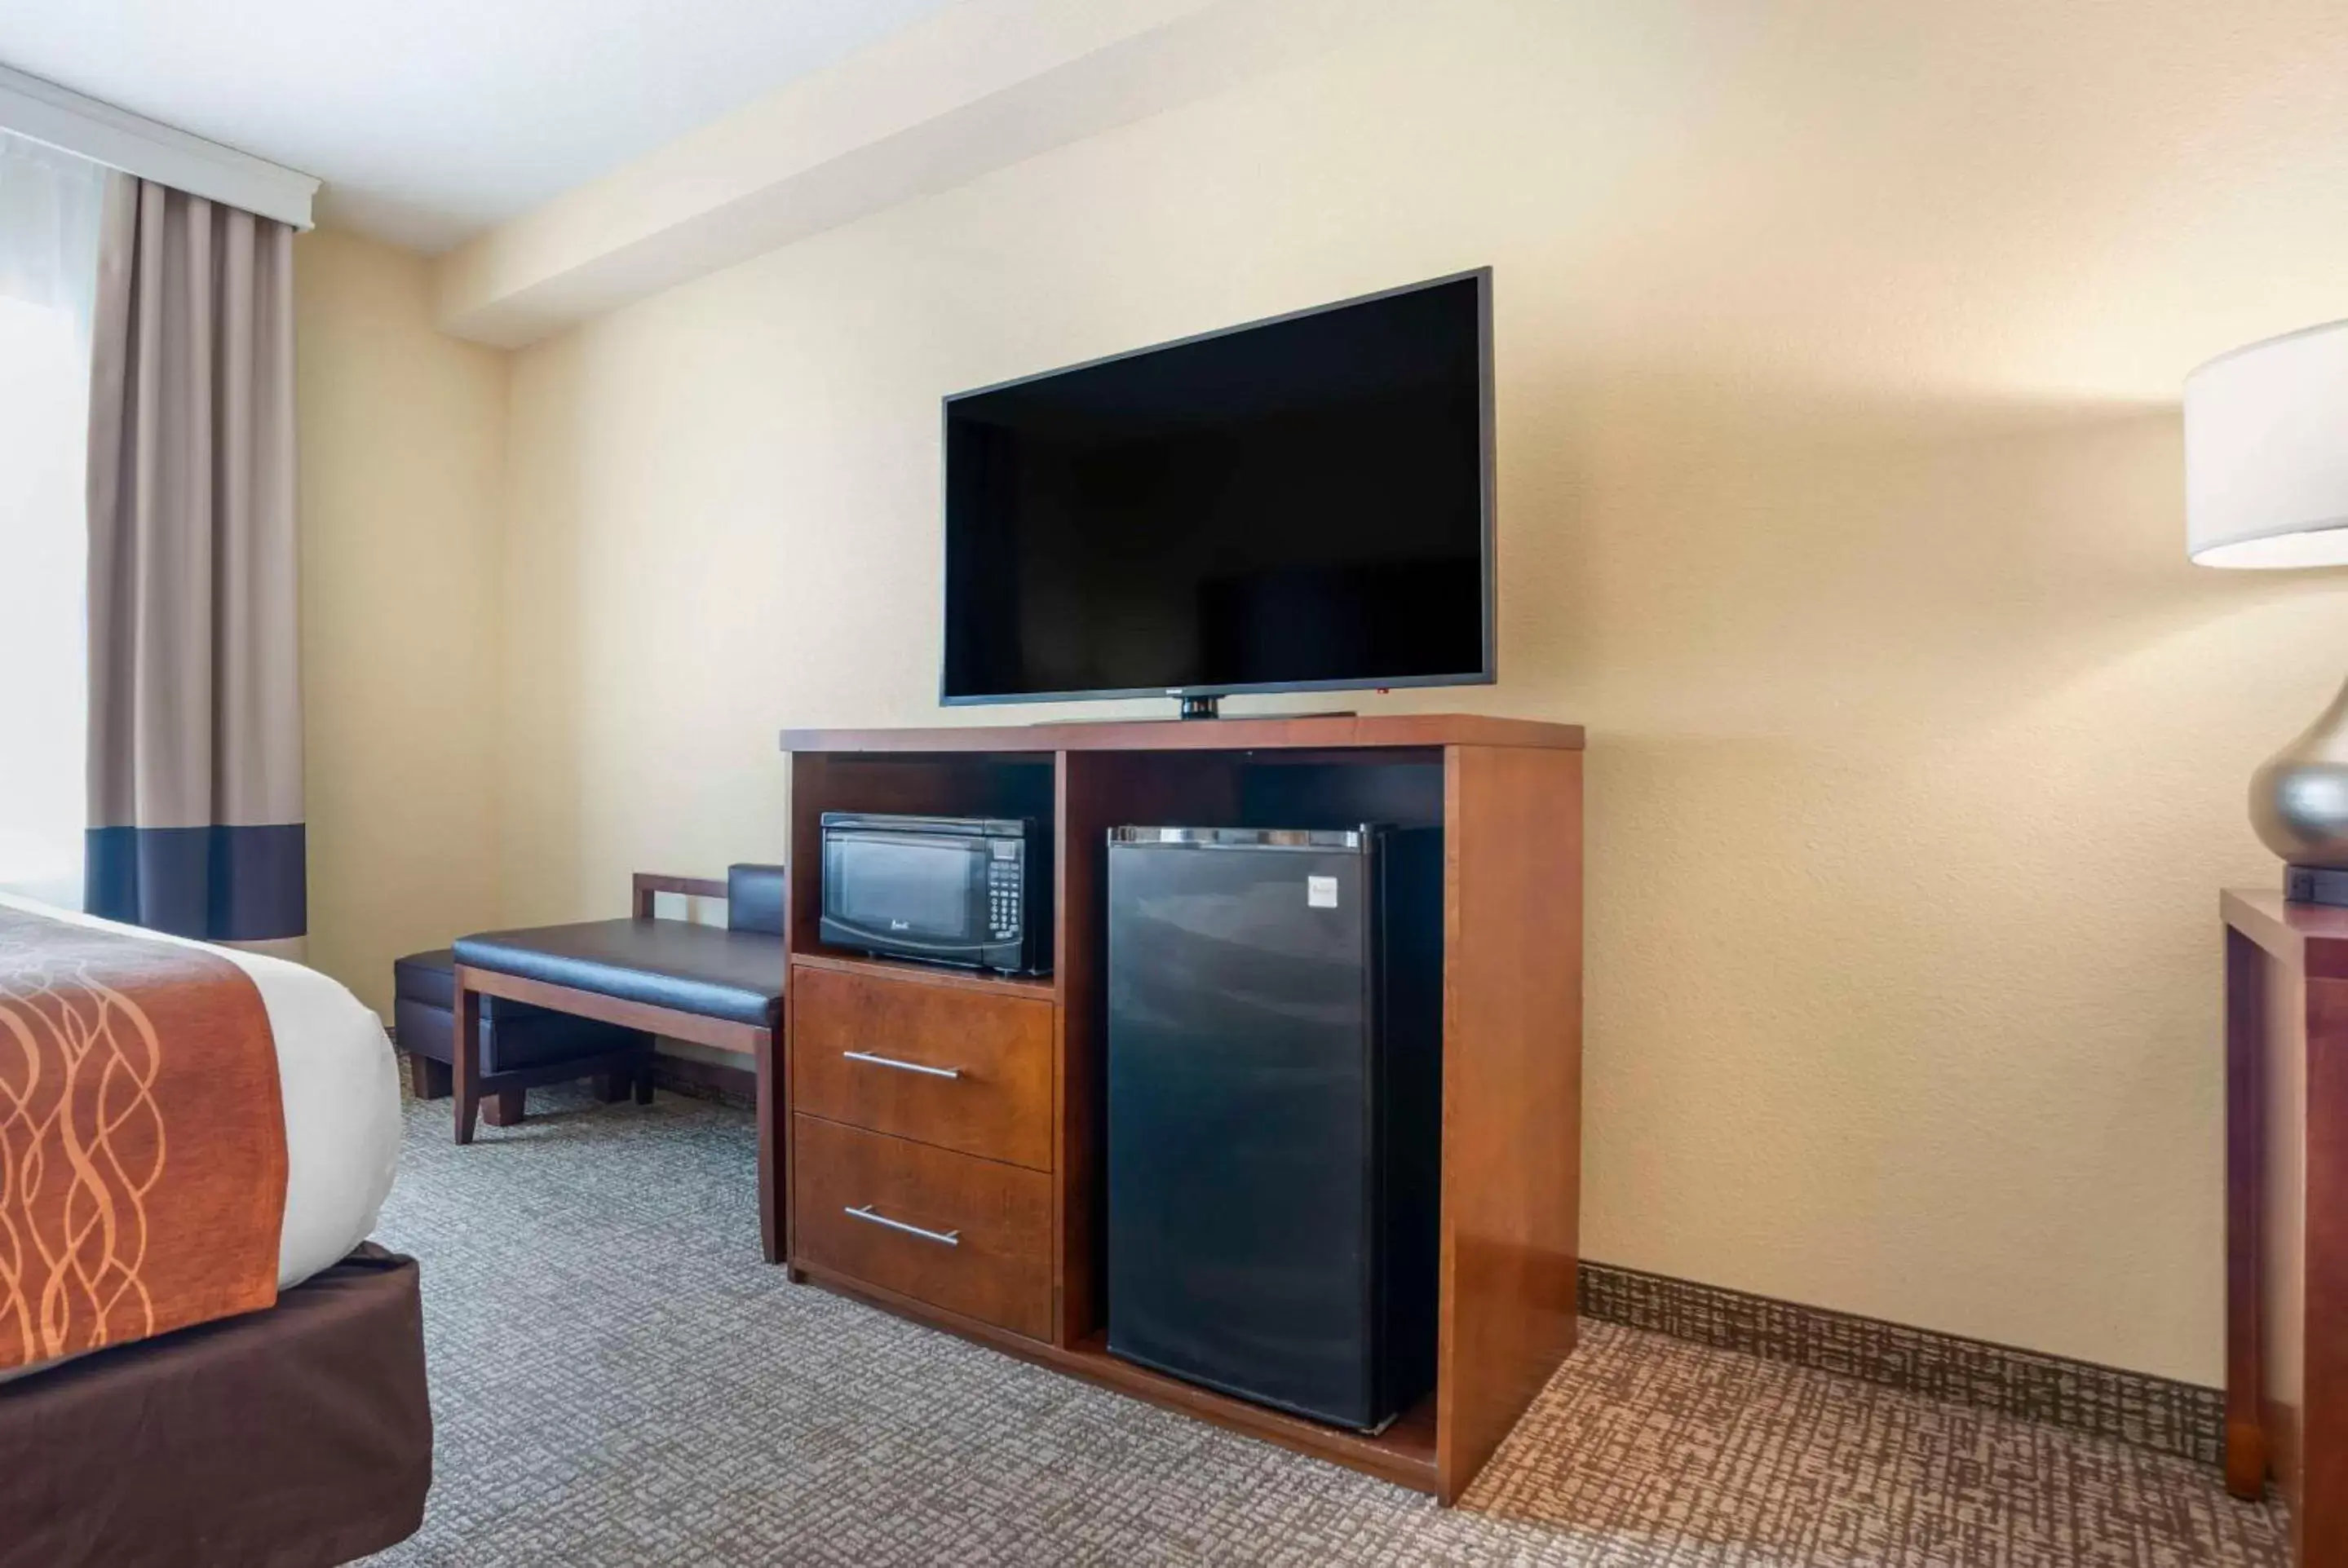 Bedroom, TV/Entertainment Center in Comfort Inn & Suites Mobile near Eastern Shore Centre